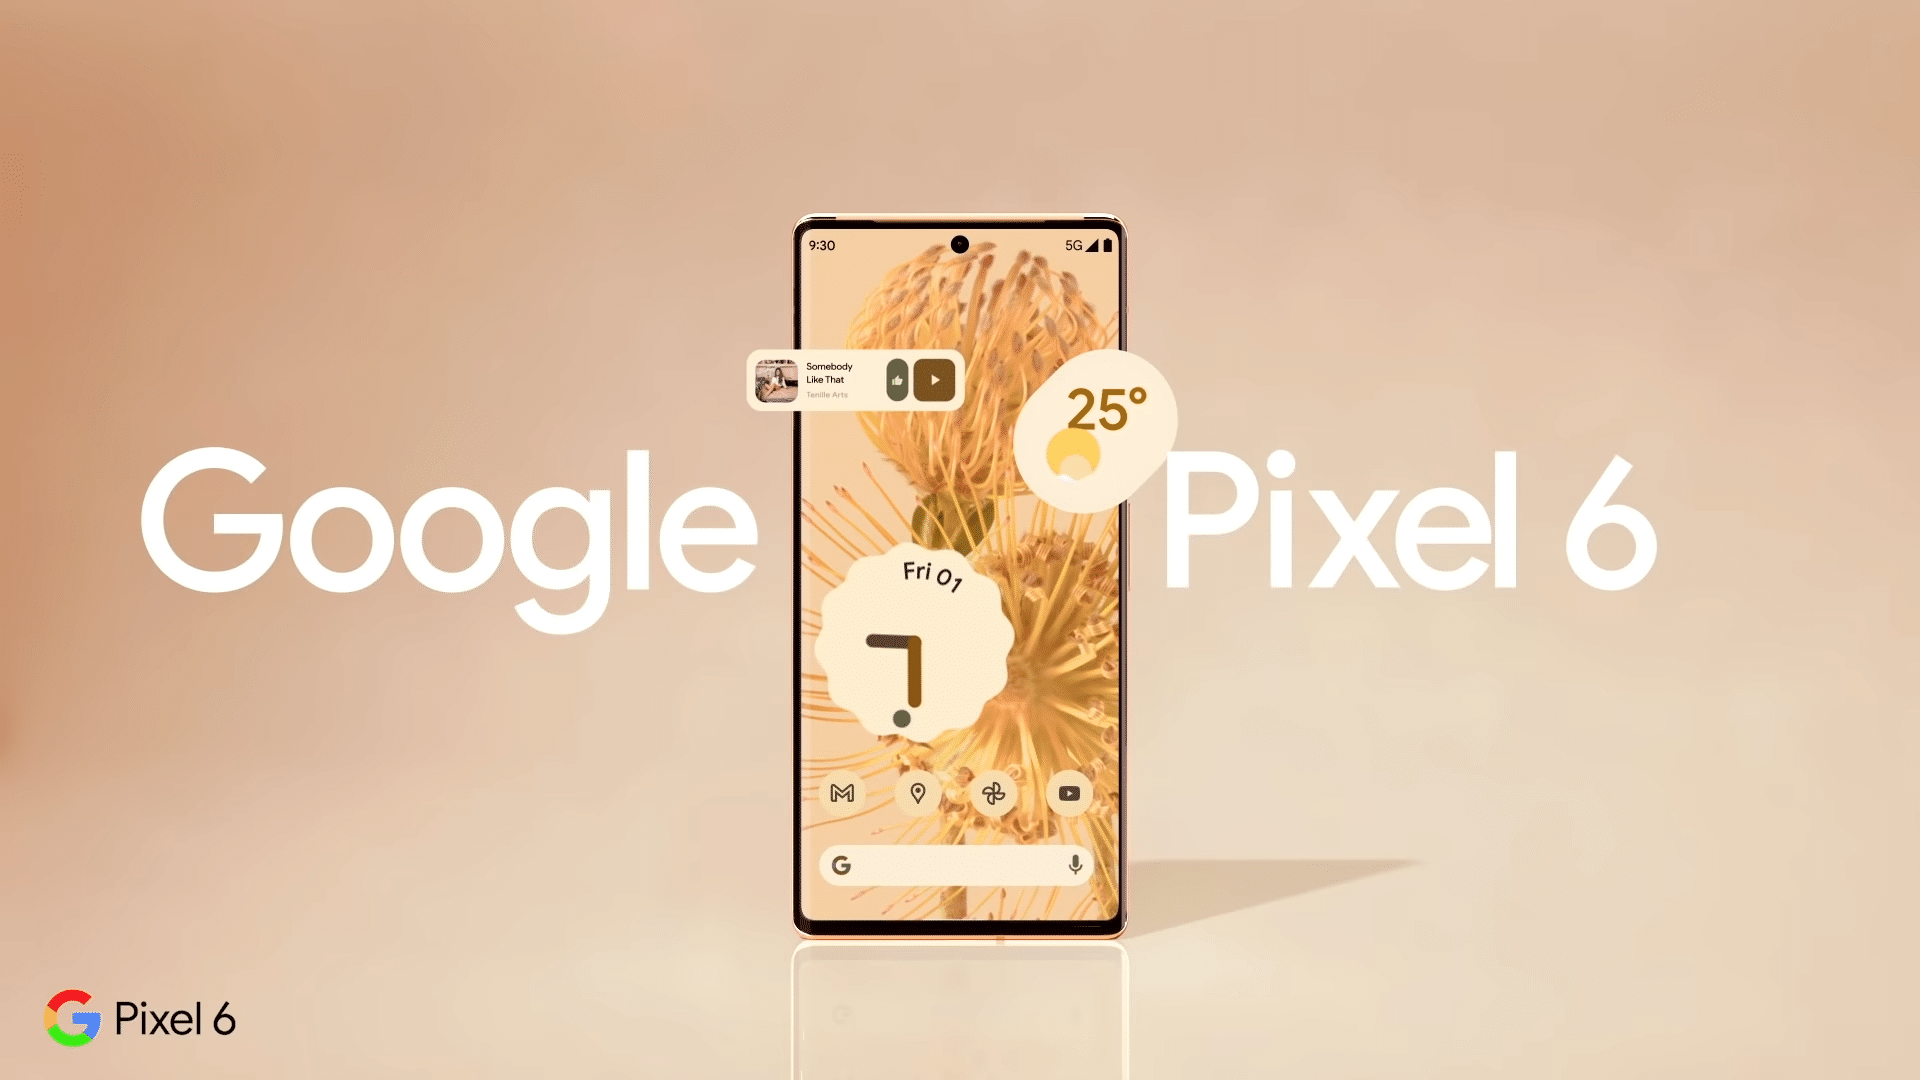 يقال أن Google Pixel 6 سيضاعف إنتاج الهواتف الذكية من جوجل